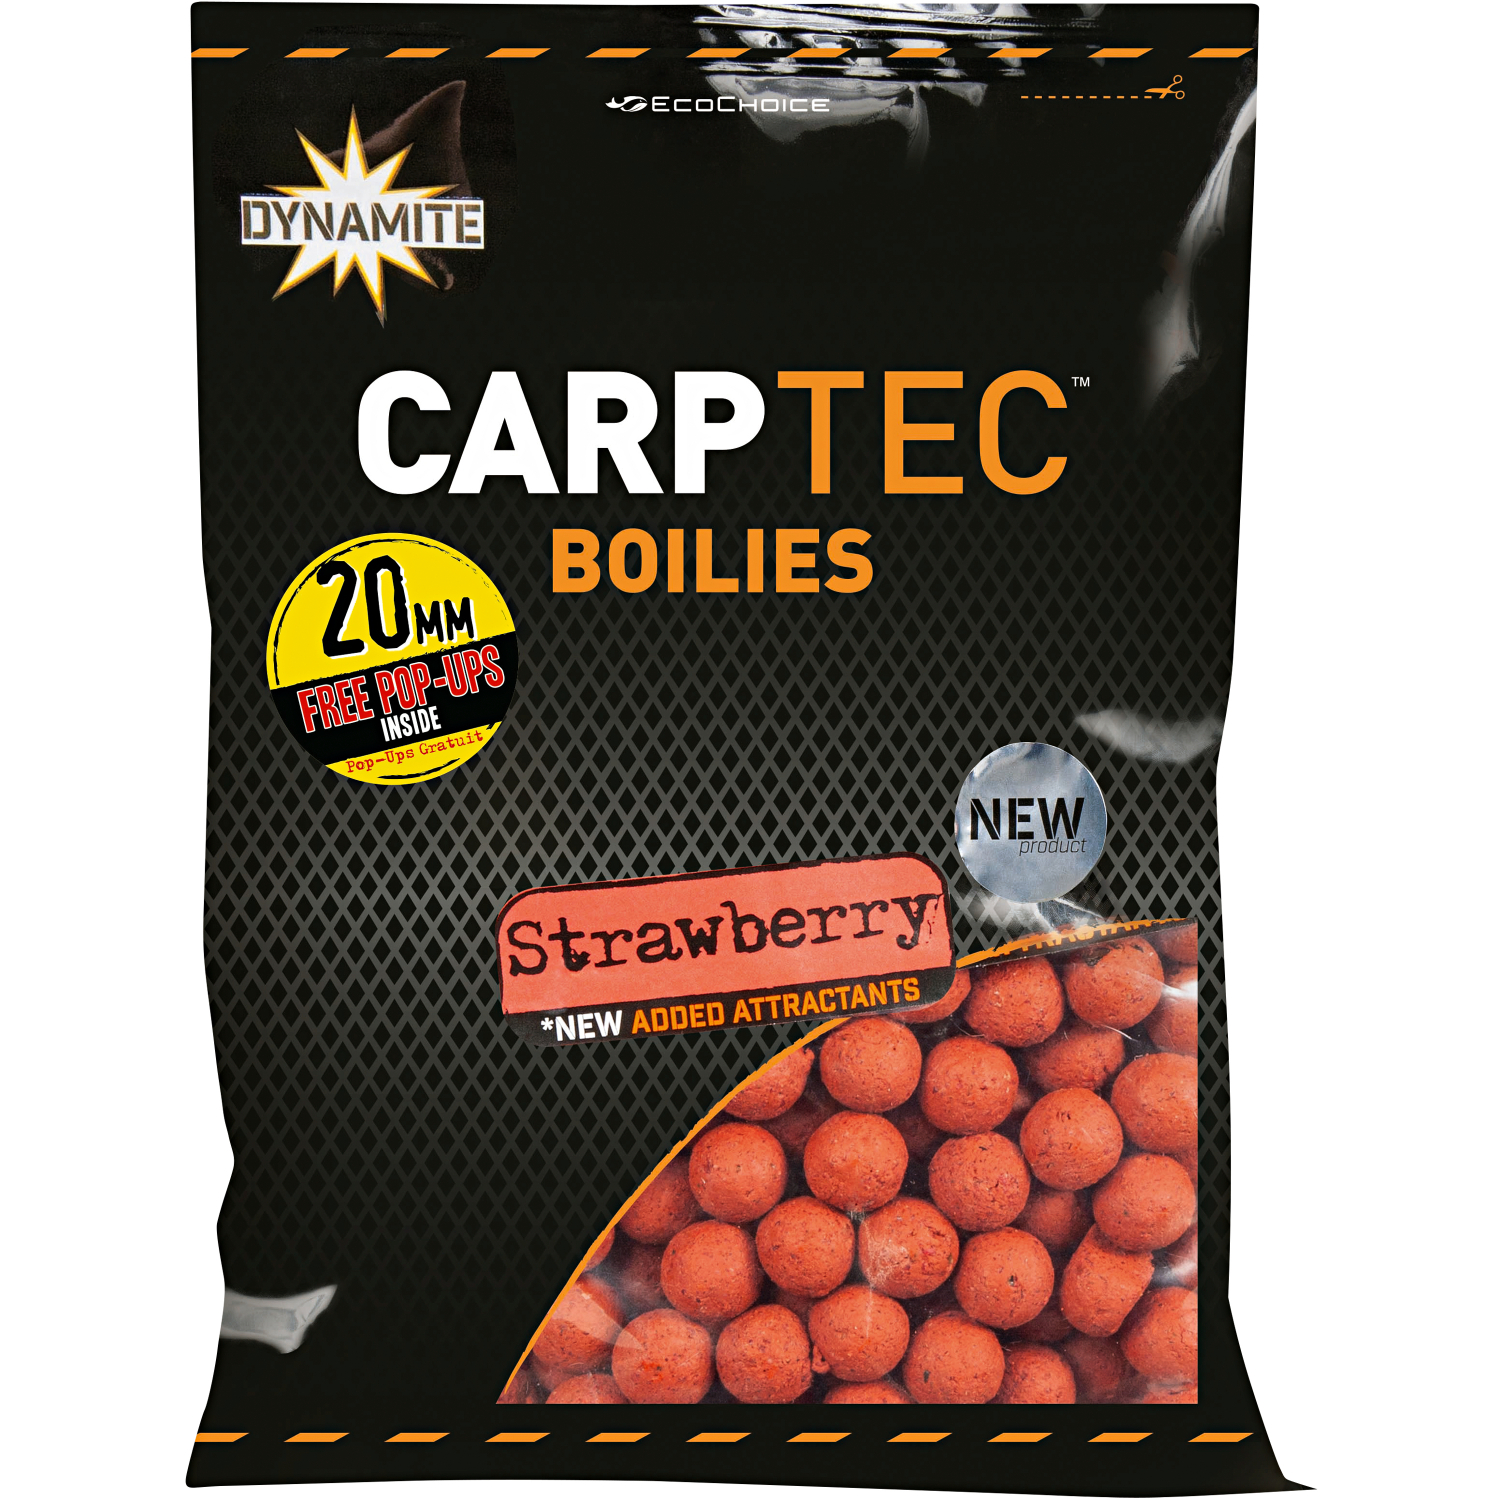 Dynamite Boilies Carp-Tec (strawberry) 